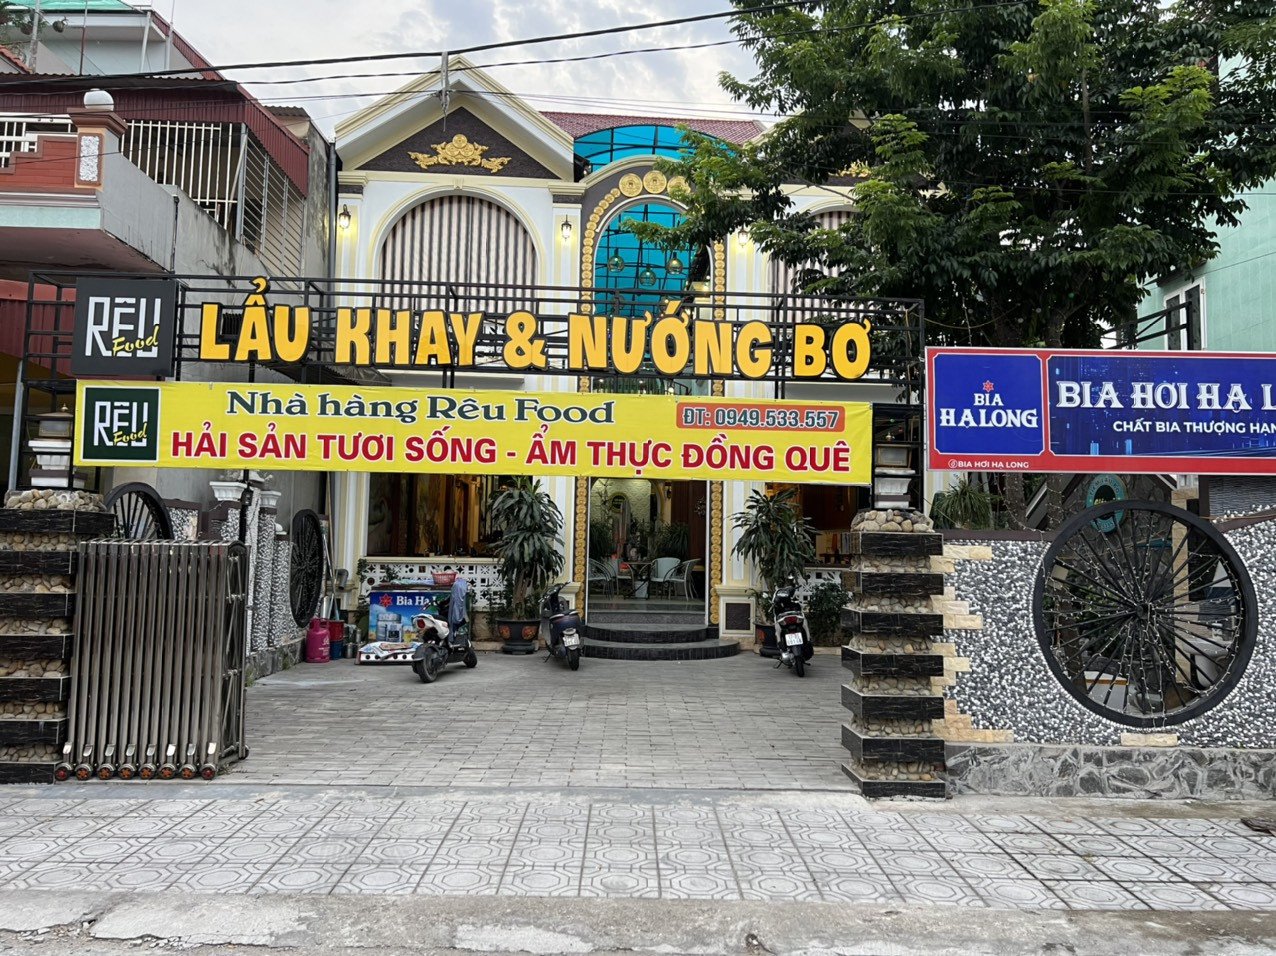 Bán nhà Rêu Food new new giá tốt vị trí vô cùng đắc địa tại Huyện Quỳnh Phụ, Tỉnh Thái Bình 1